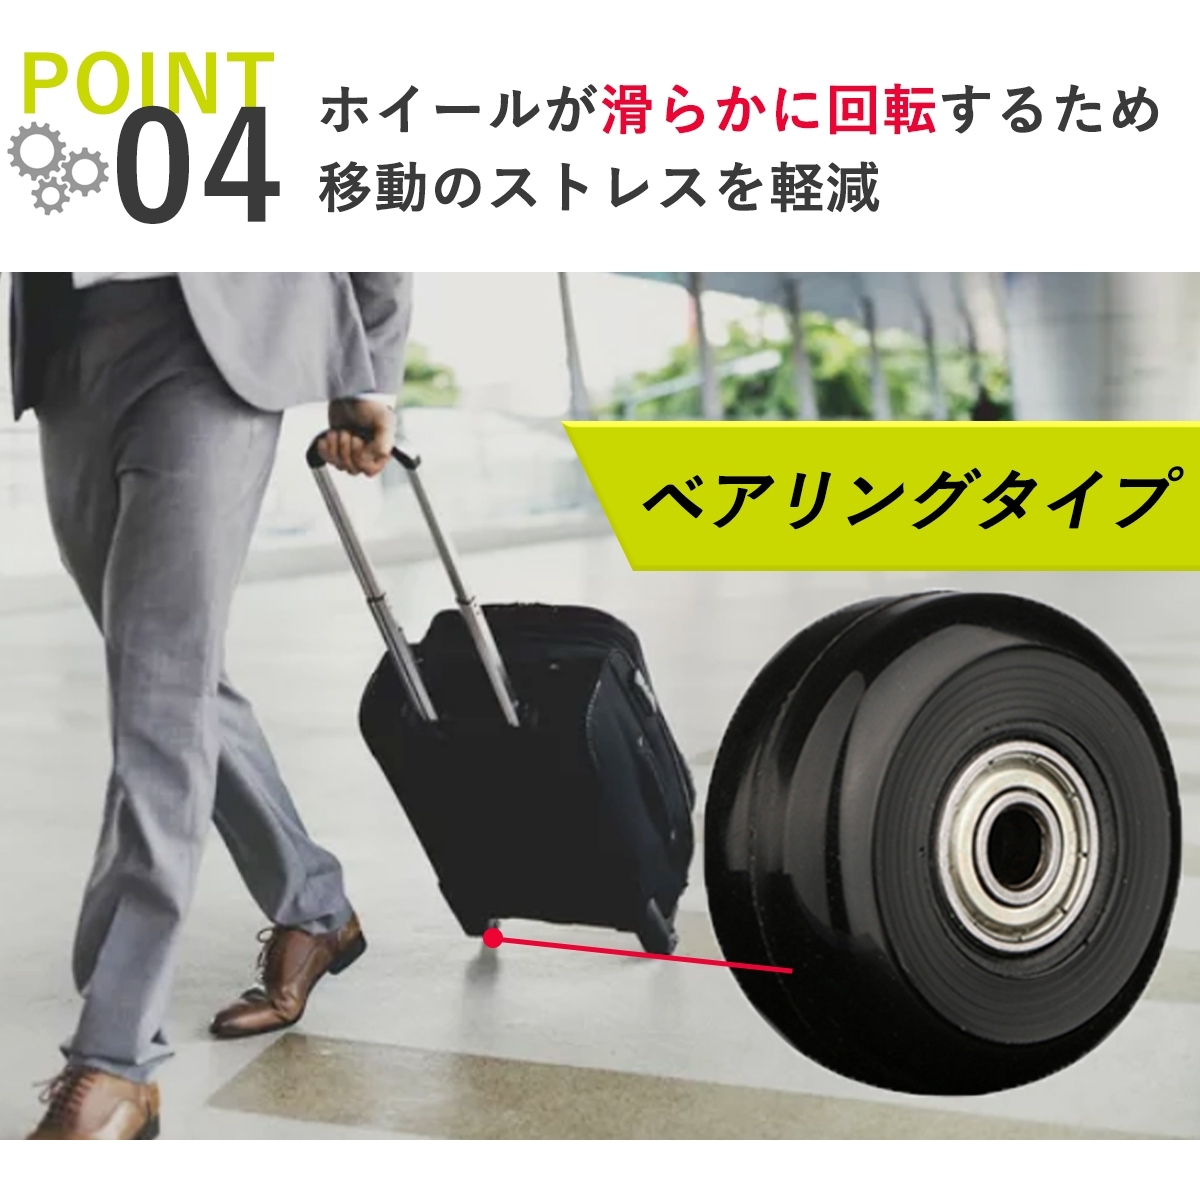 1ペア スーツケース用交換タイヤ スーツケースホイール 交換ホイール 代用 トラベルバッグ ラゲッジ 交換 取替え キャスター 360度回転